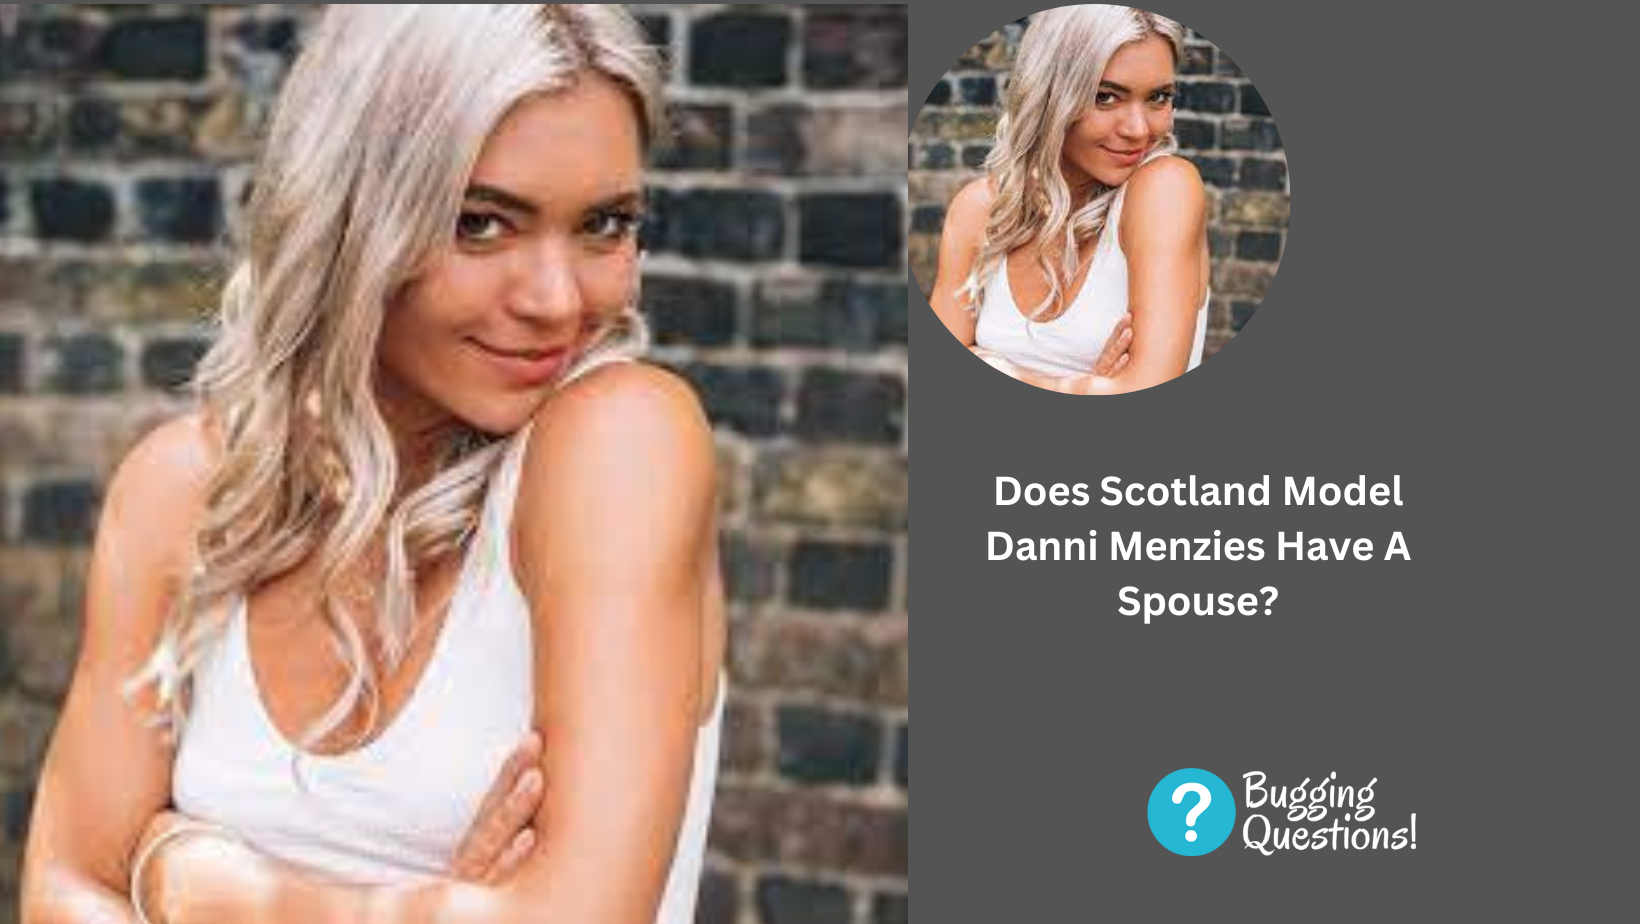 Does Scotland Model Danni Menzies Have A Spouse?